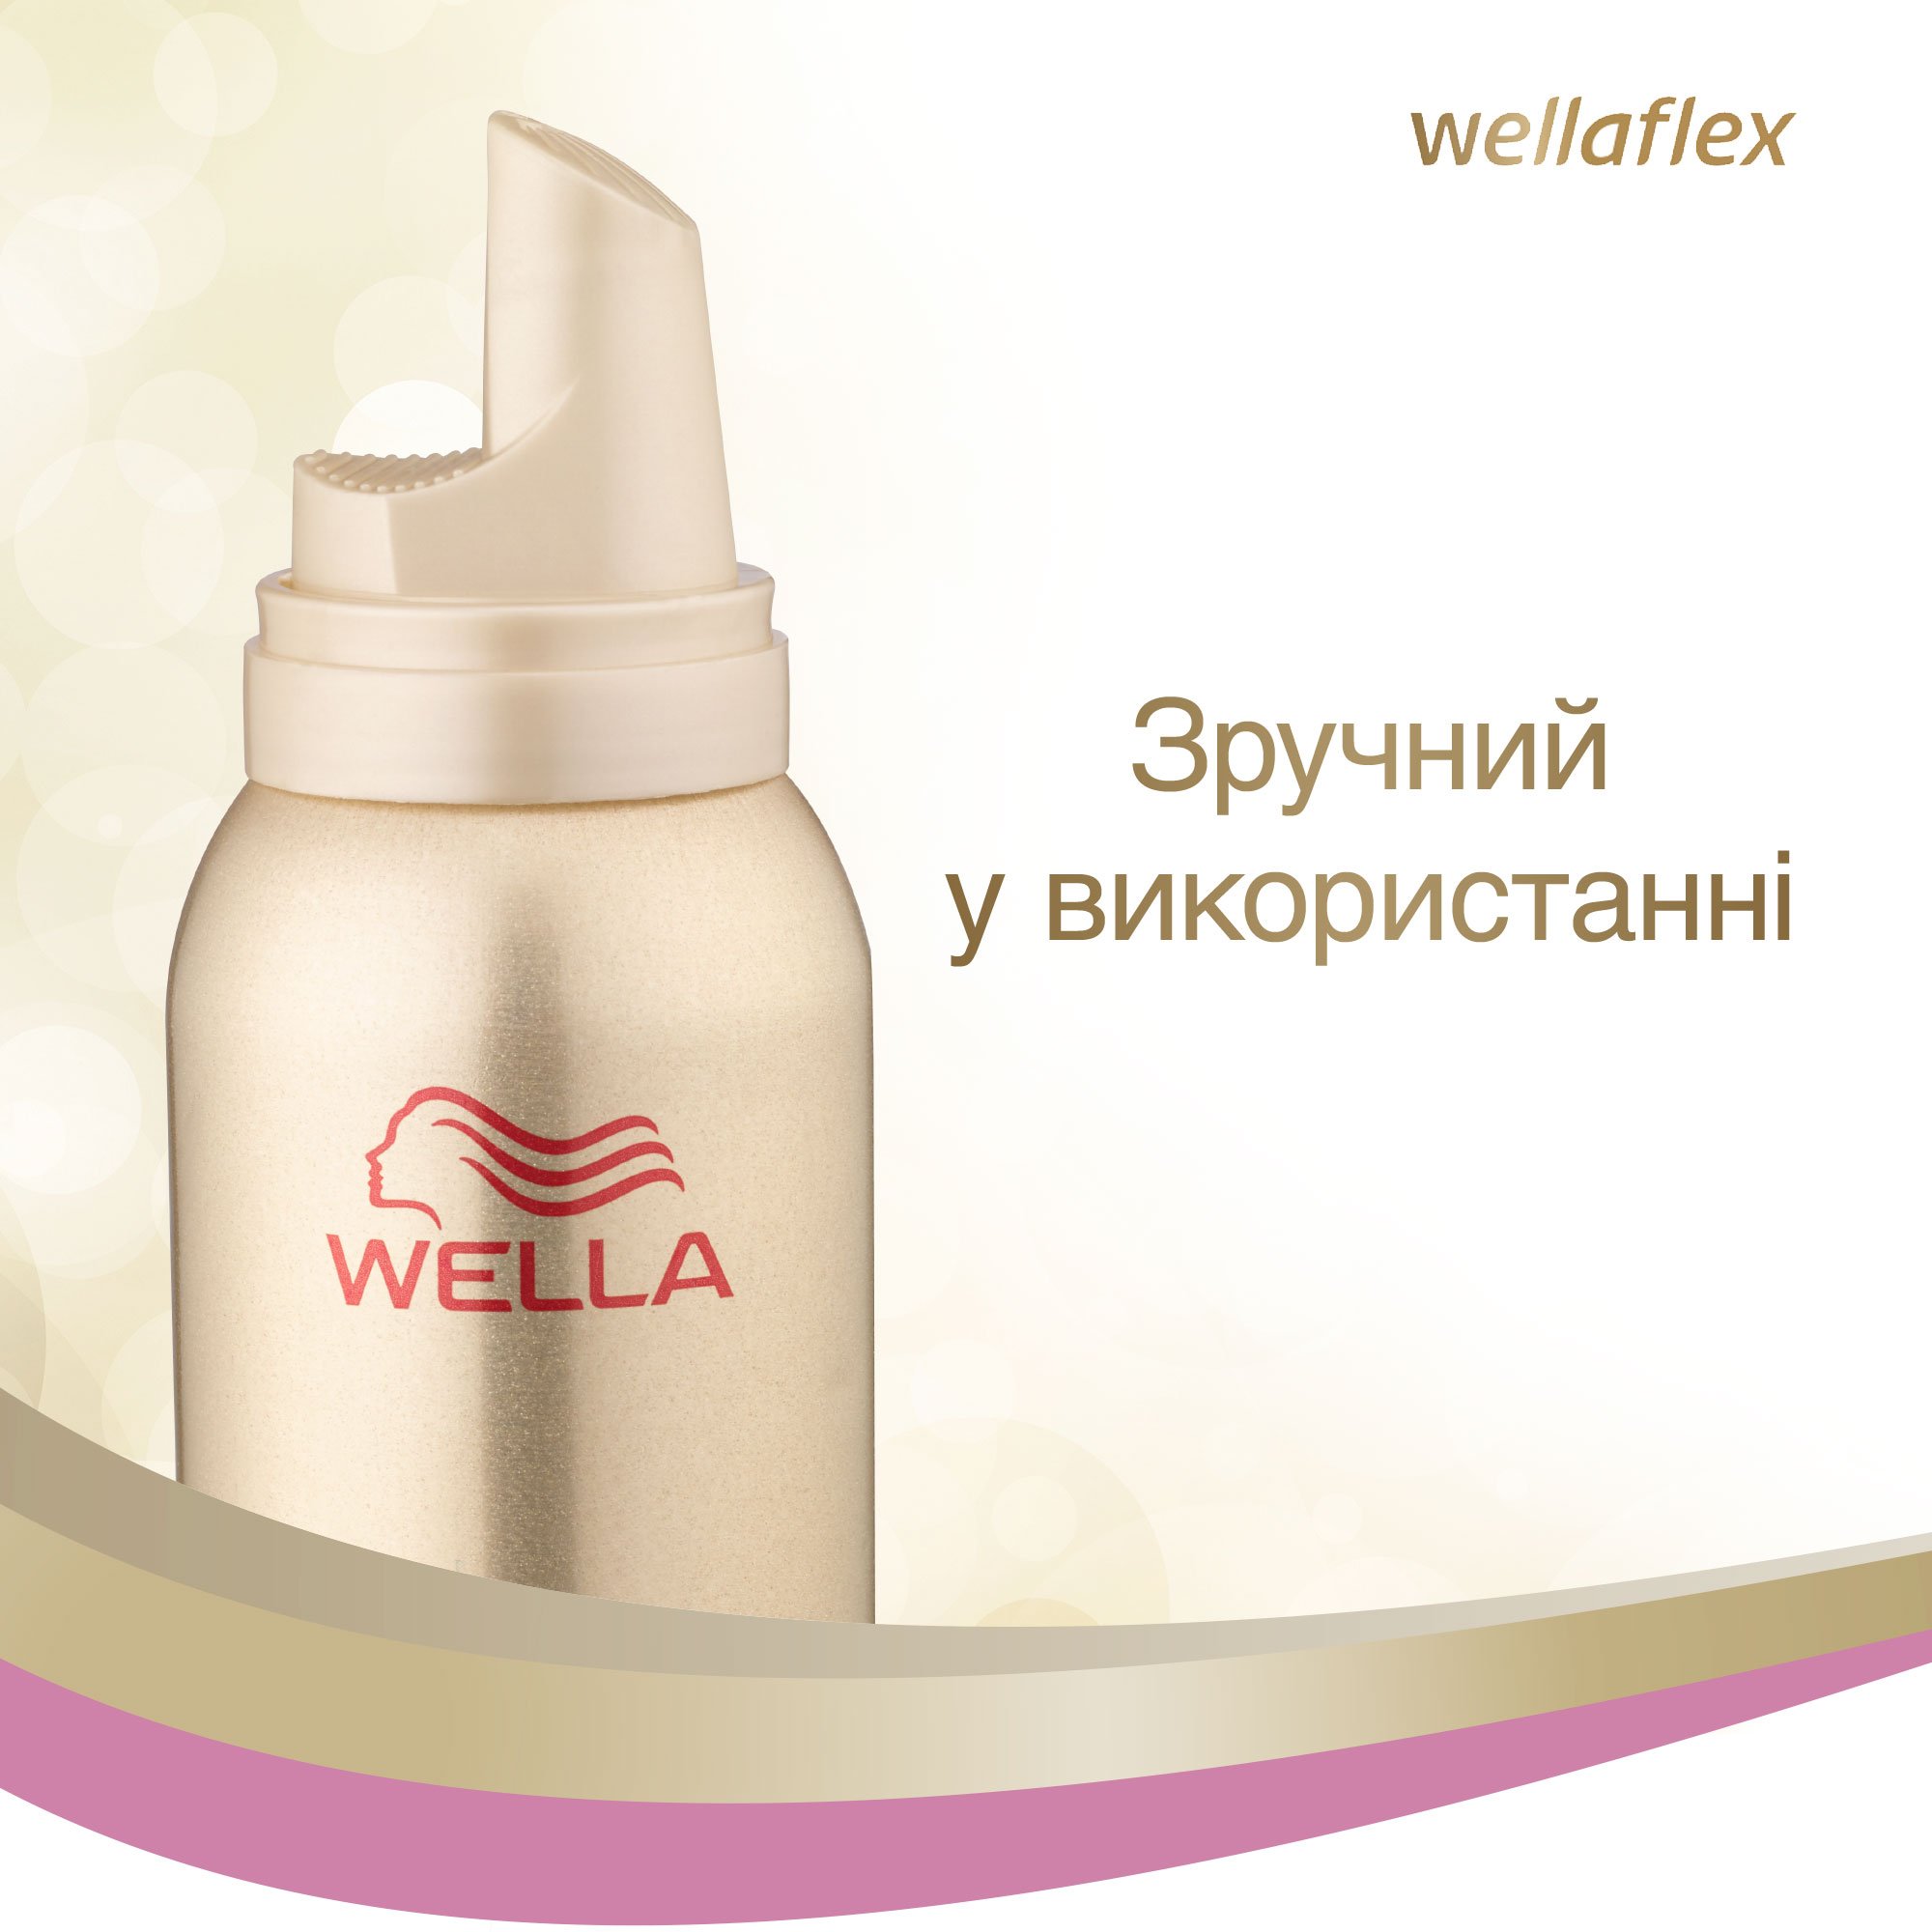 Мусс для волос Wellaflex для чувствительной кожи головы Сильной фиксации, 200 мл - фото 3